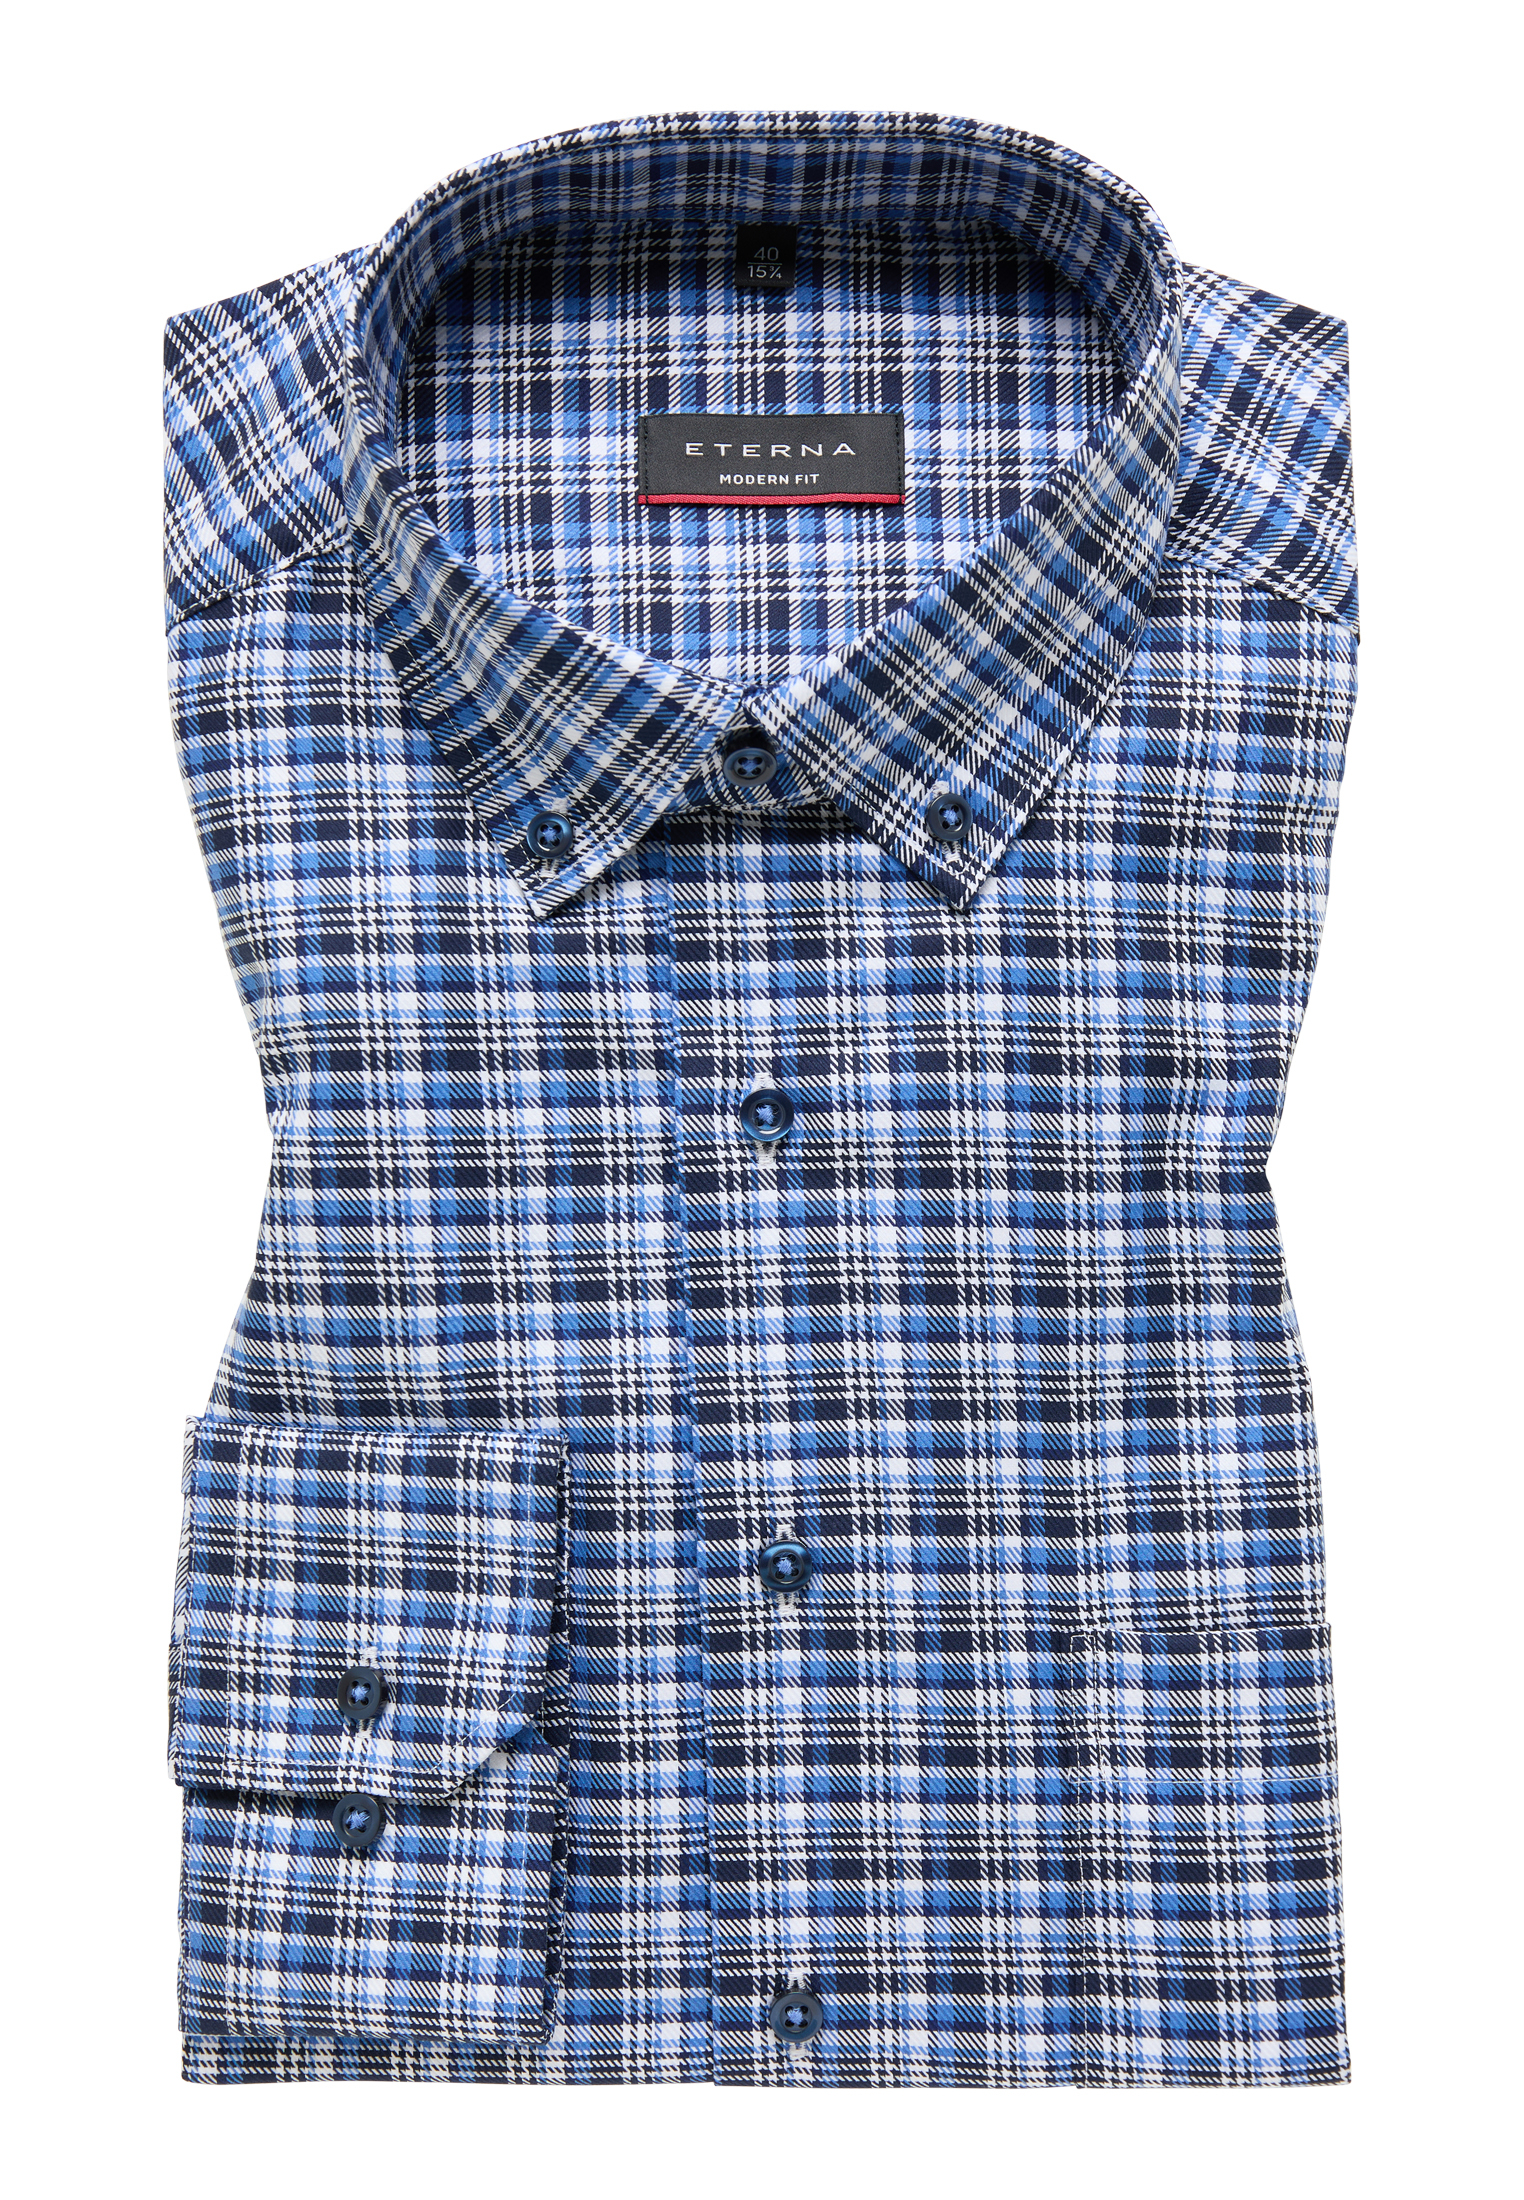 Herren Hemden | ETERNA online kaufen